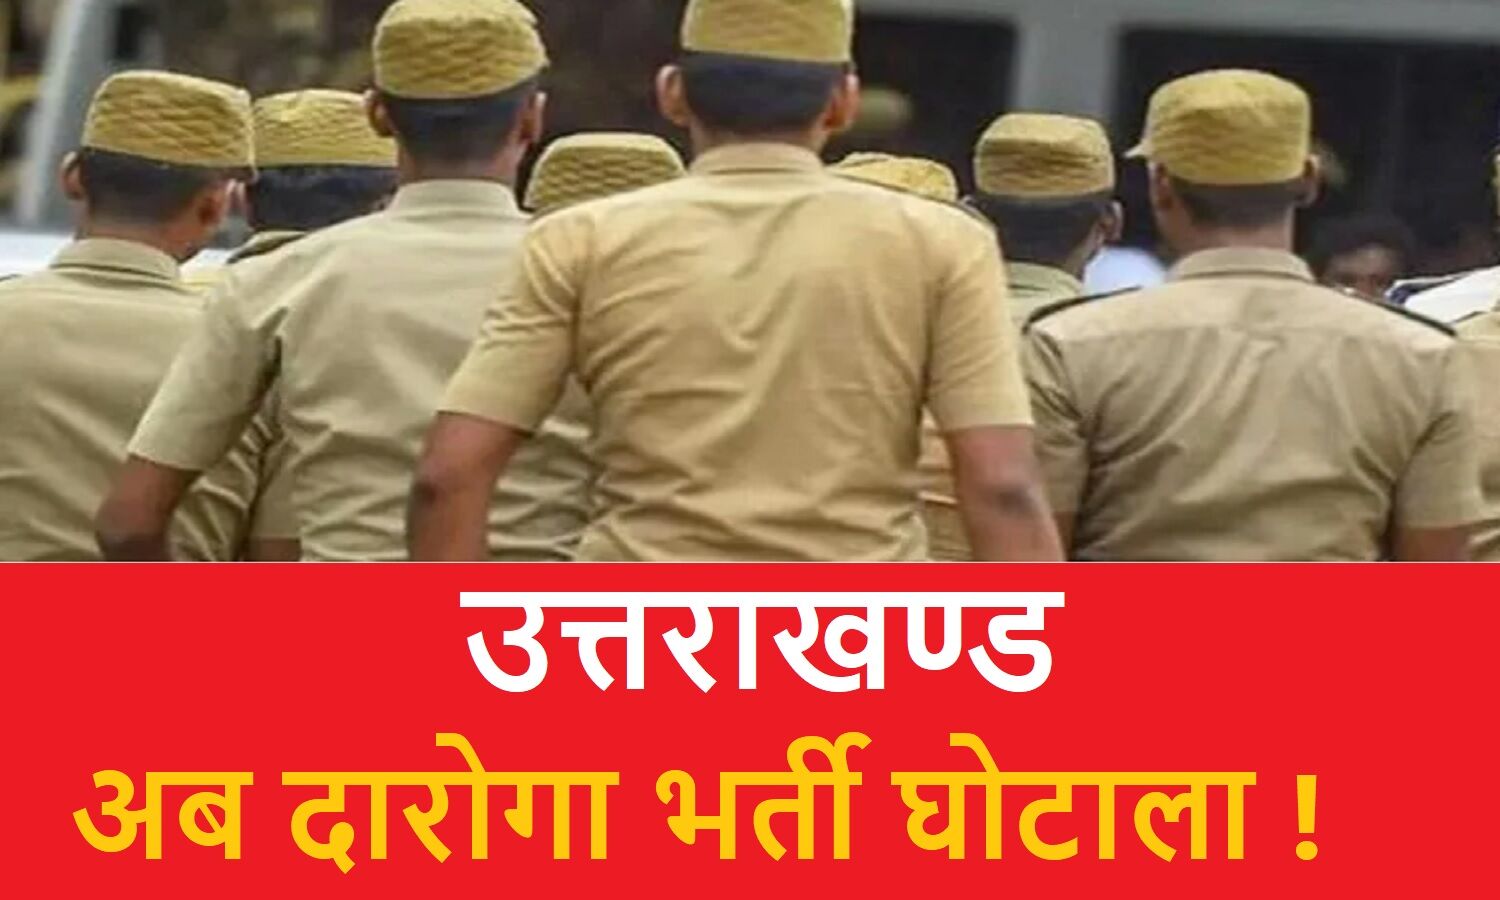 Uttarakhand Bharti Ghotala : 2015 में हुई पुलिस दरोगा भर्ती परीक्षा भी विवादों के घेरे में, जल्द सौंपी जायेगी विजिलेंस को जांच !